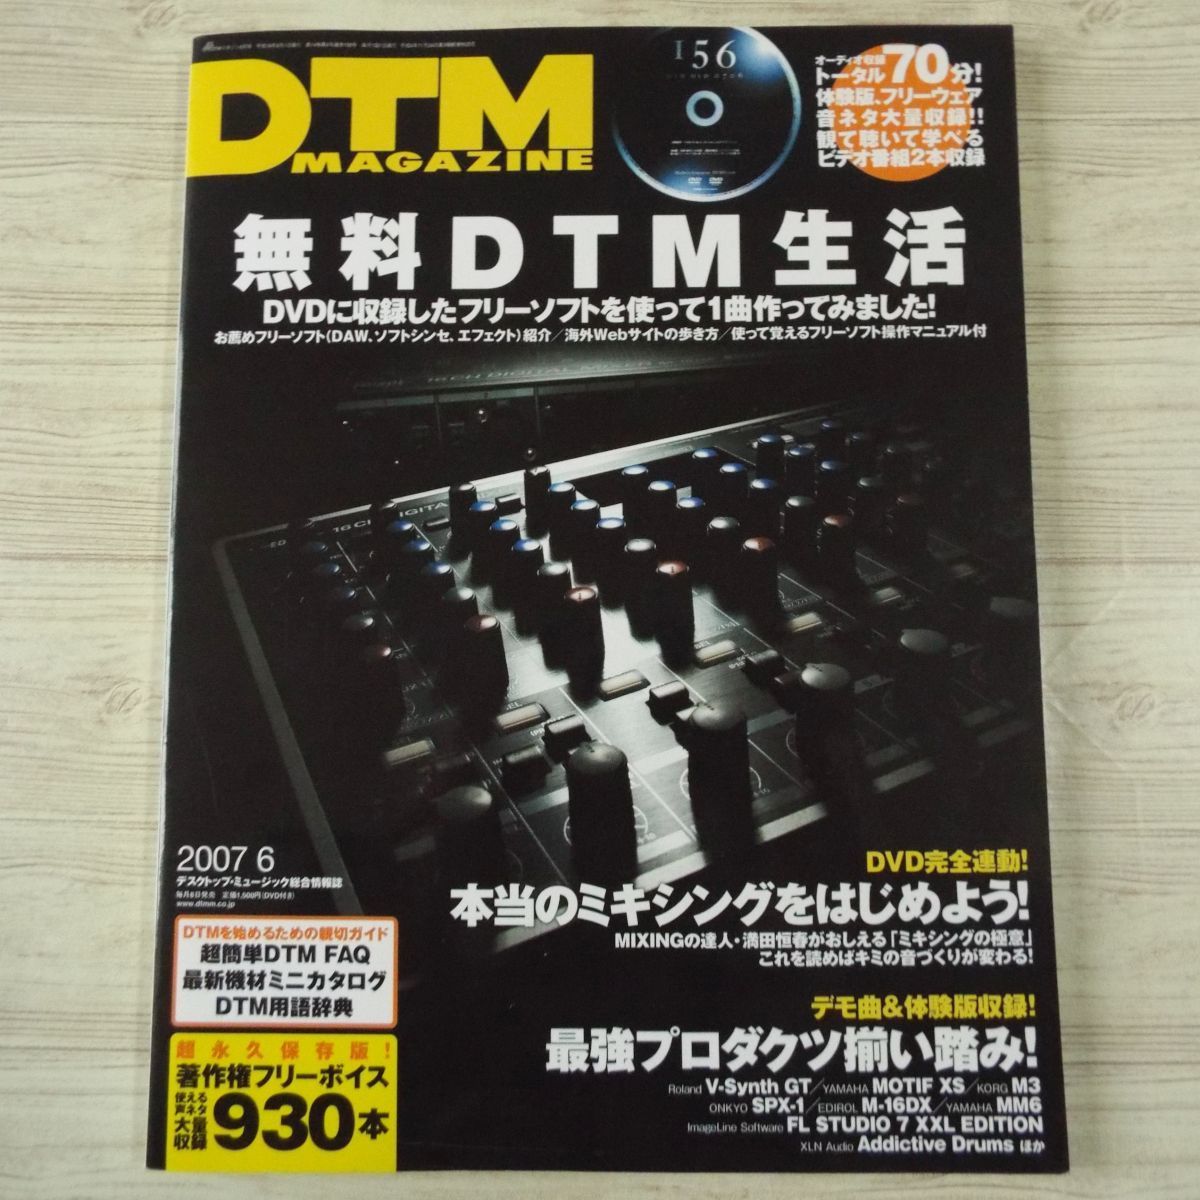  создание музыки журнал [DTM журнал DTM MAGAZINE 2007.6(DVD приложен )] бесплатный DTM жизнь авторское право свободный voice 930шт.